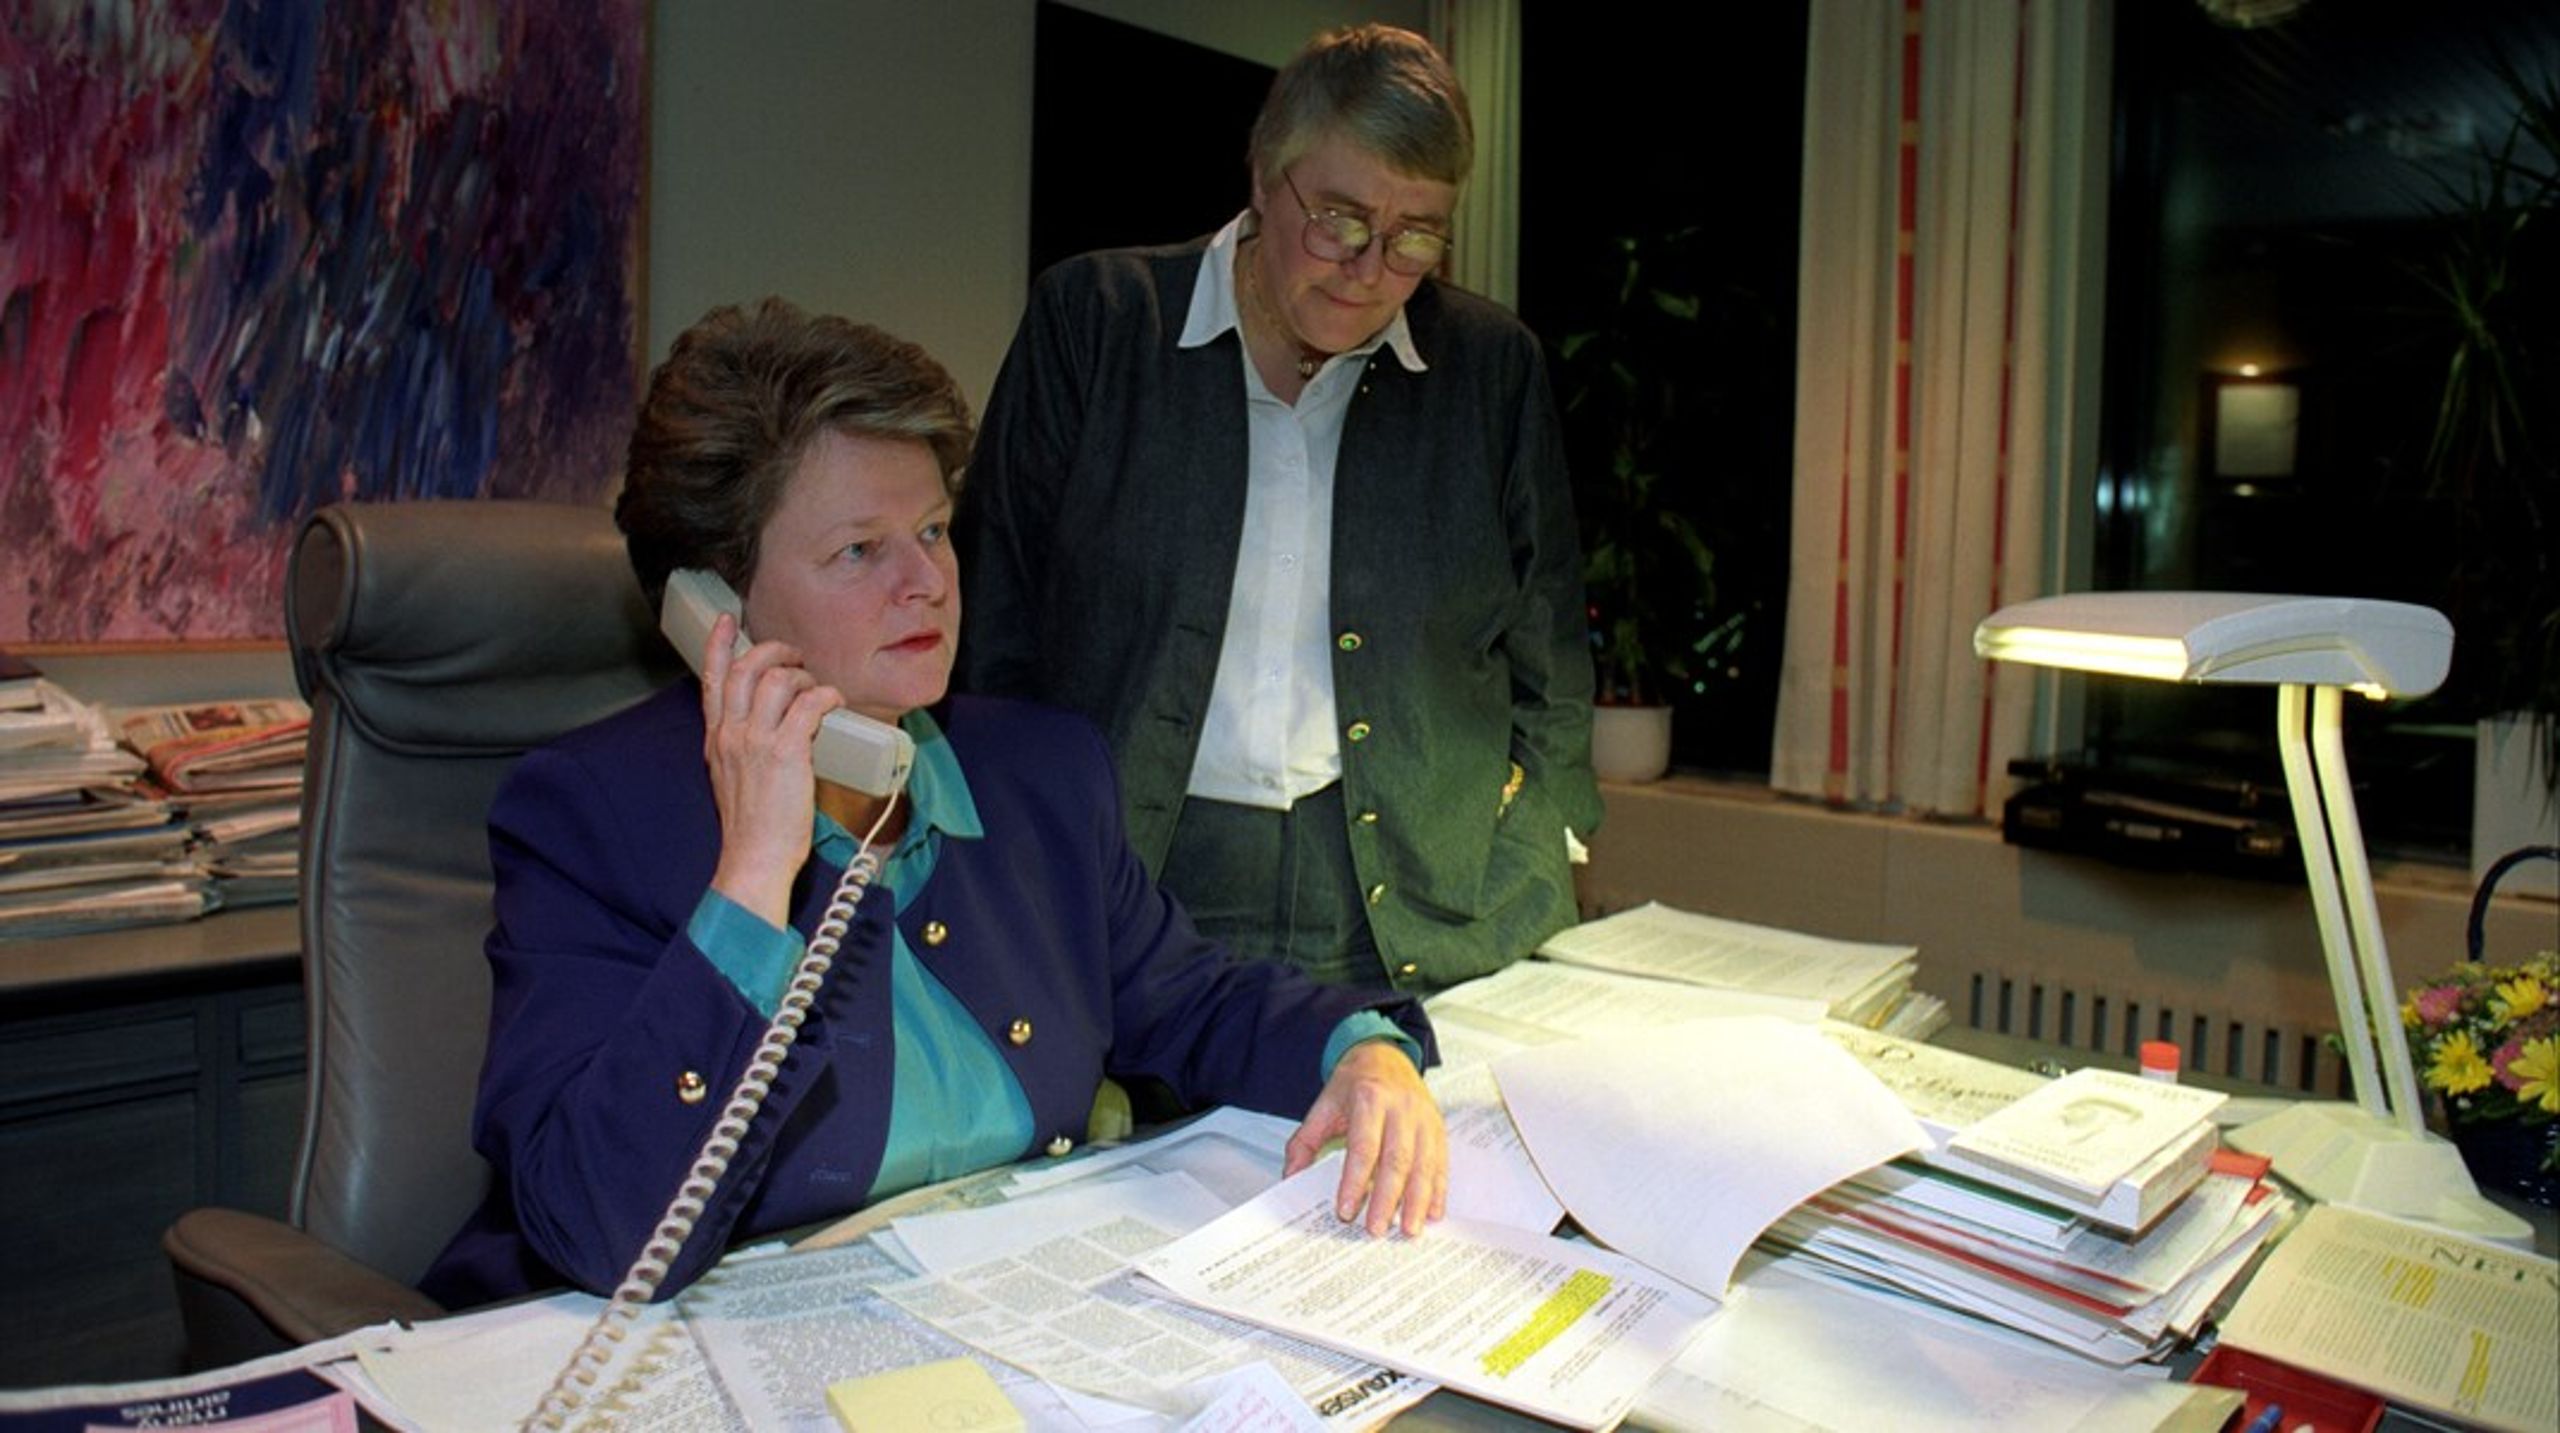 EØS-avtalens mor, daværende statsminister Gro Harlem Brundtland avbildet i 1991 sammen med daværende fiskeriminister Oddrun Pettersen. Spent venter de to på&nbsp;resultatene fra forhandlingene i Luxembourg om avtalen med EF og EFTA, EØS-avtalen.&nbsp;Har verden forandret seg såpass mye etter den tid at EØS-avtalen ikke lenger er nok for Norge?